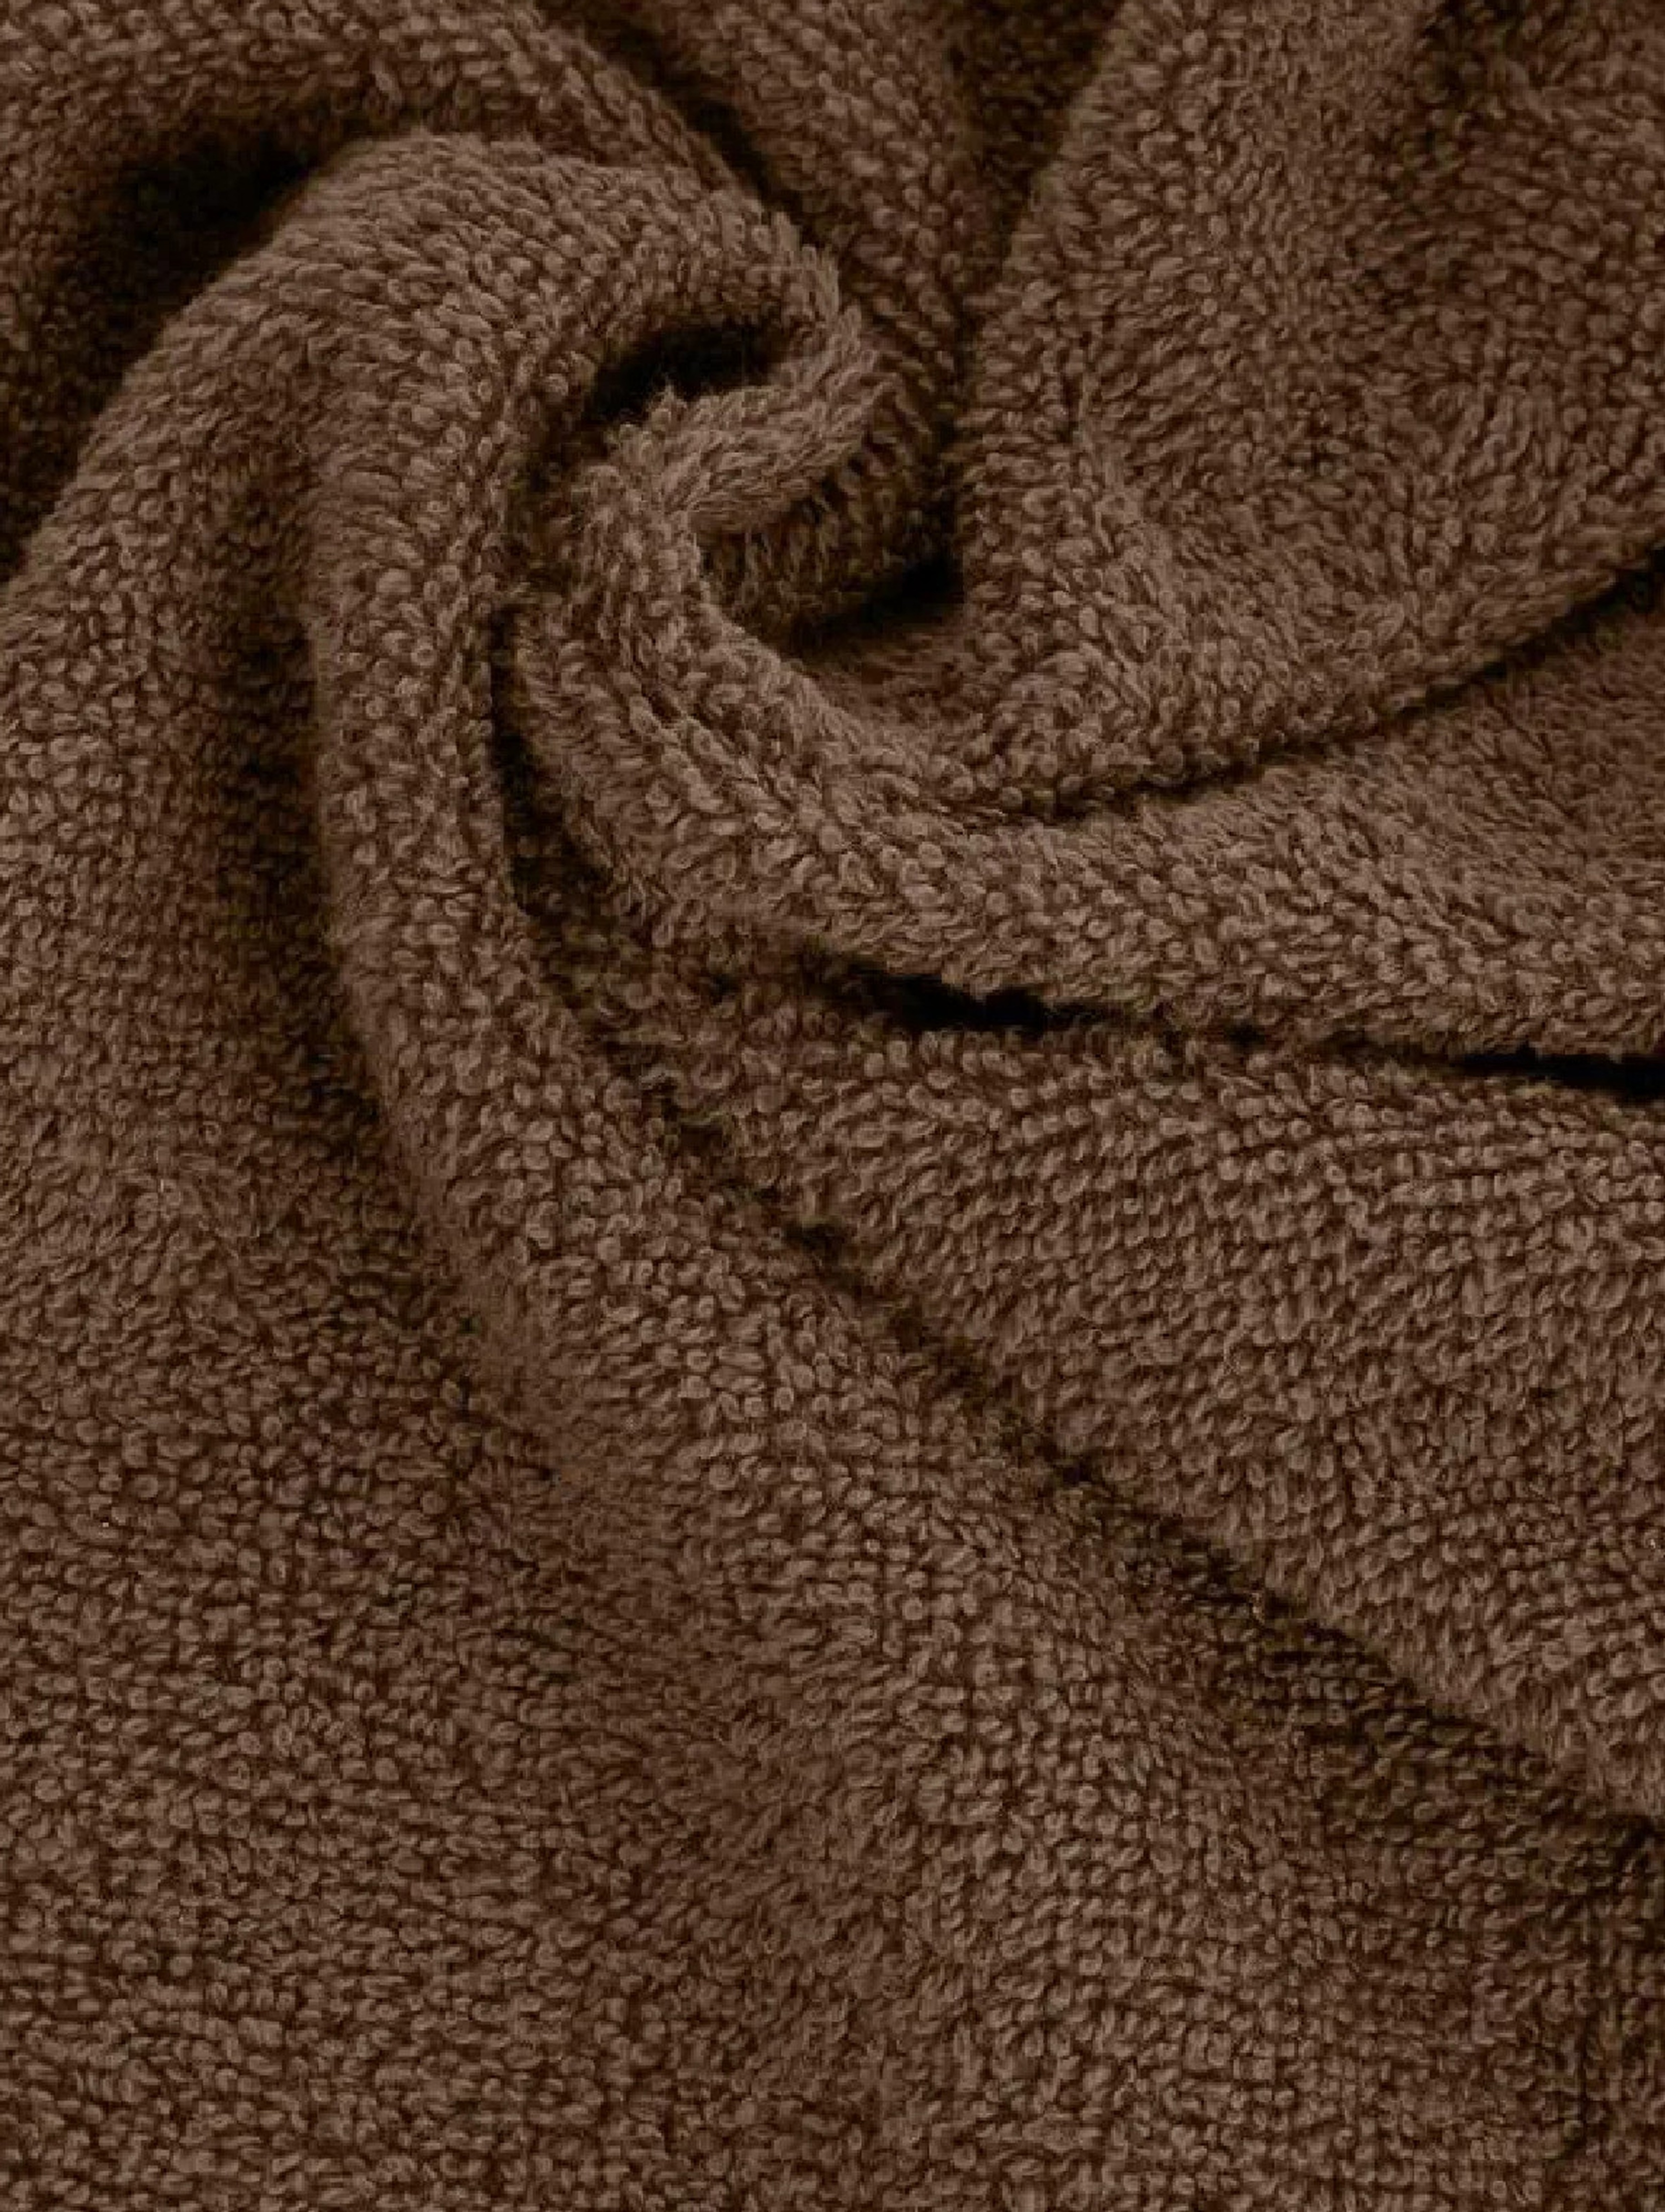 Ręcznik gładki bawełniany 70x140 cm brązowy